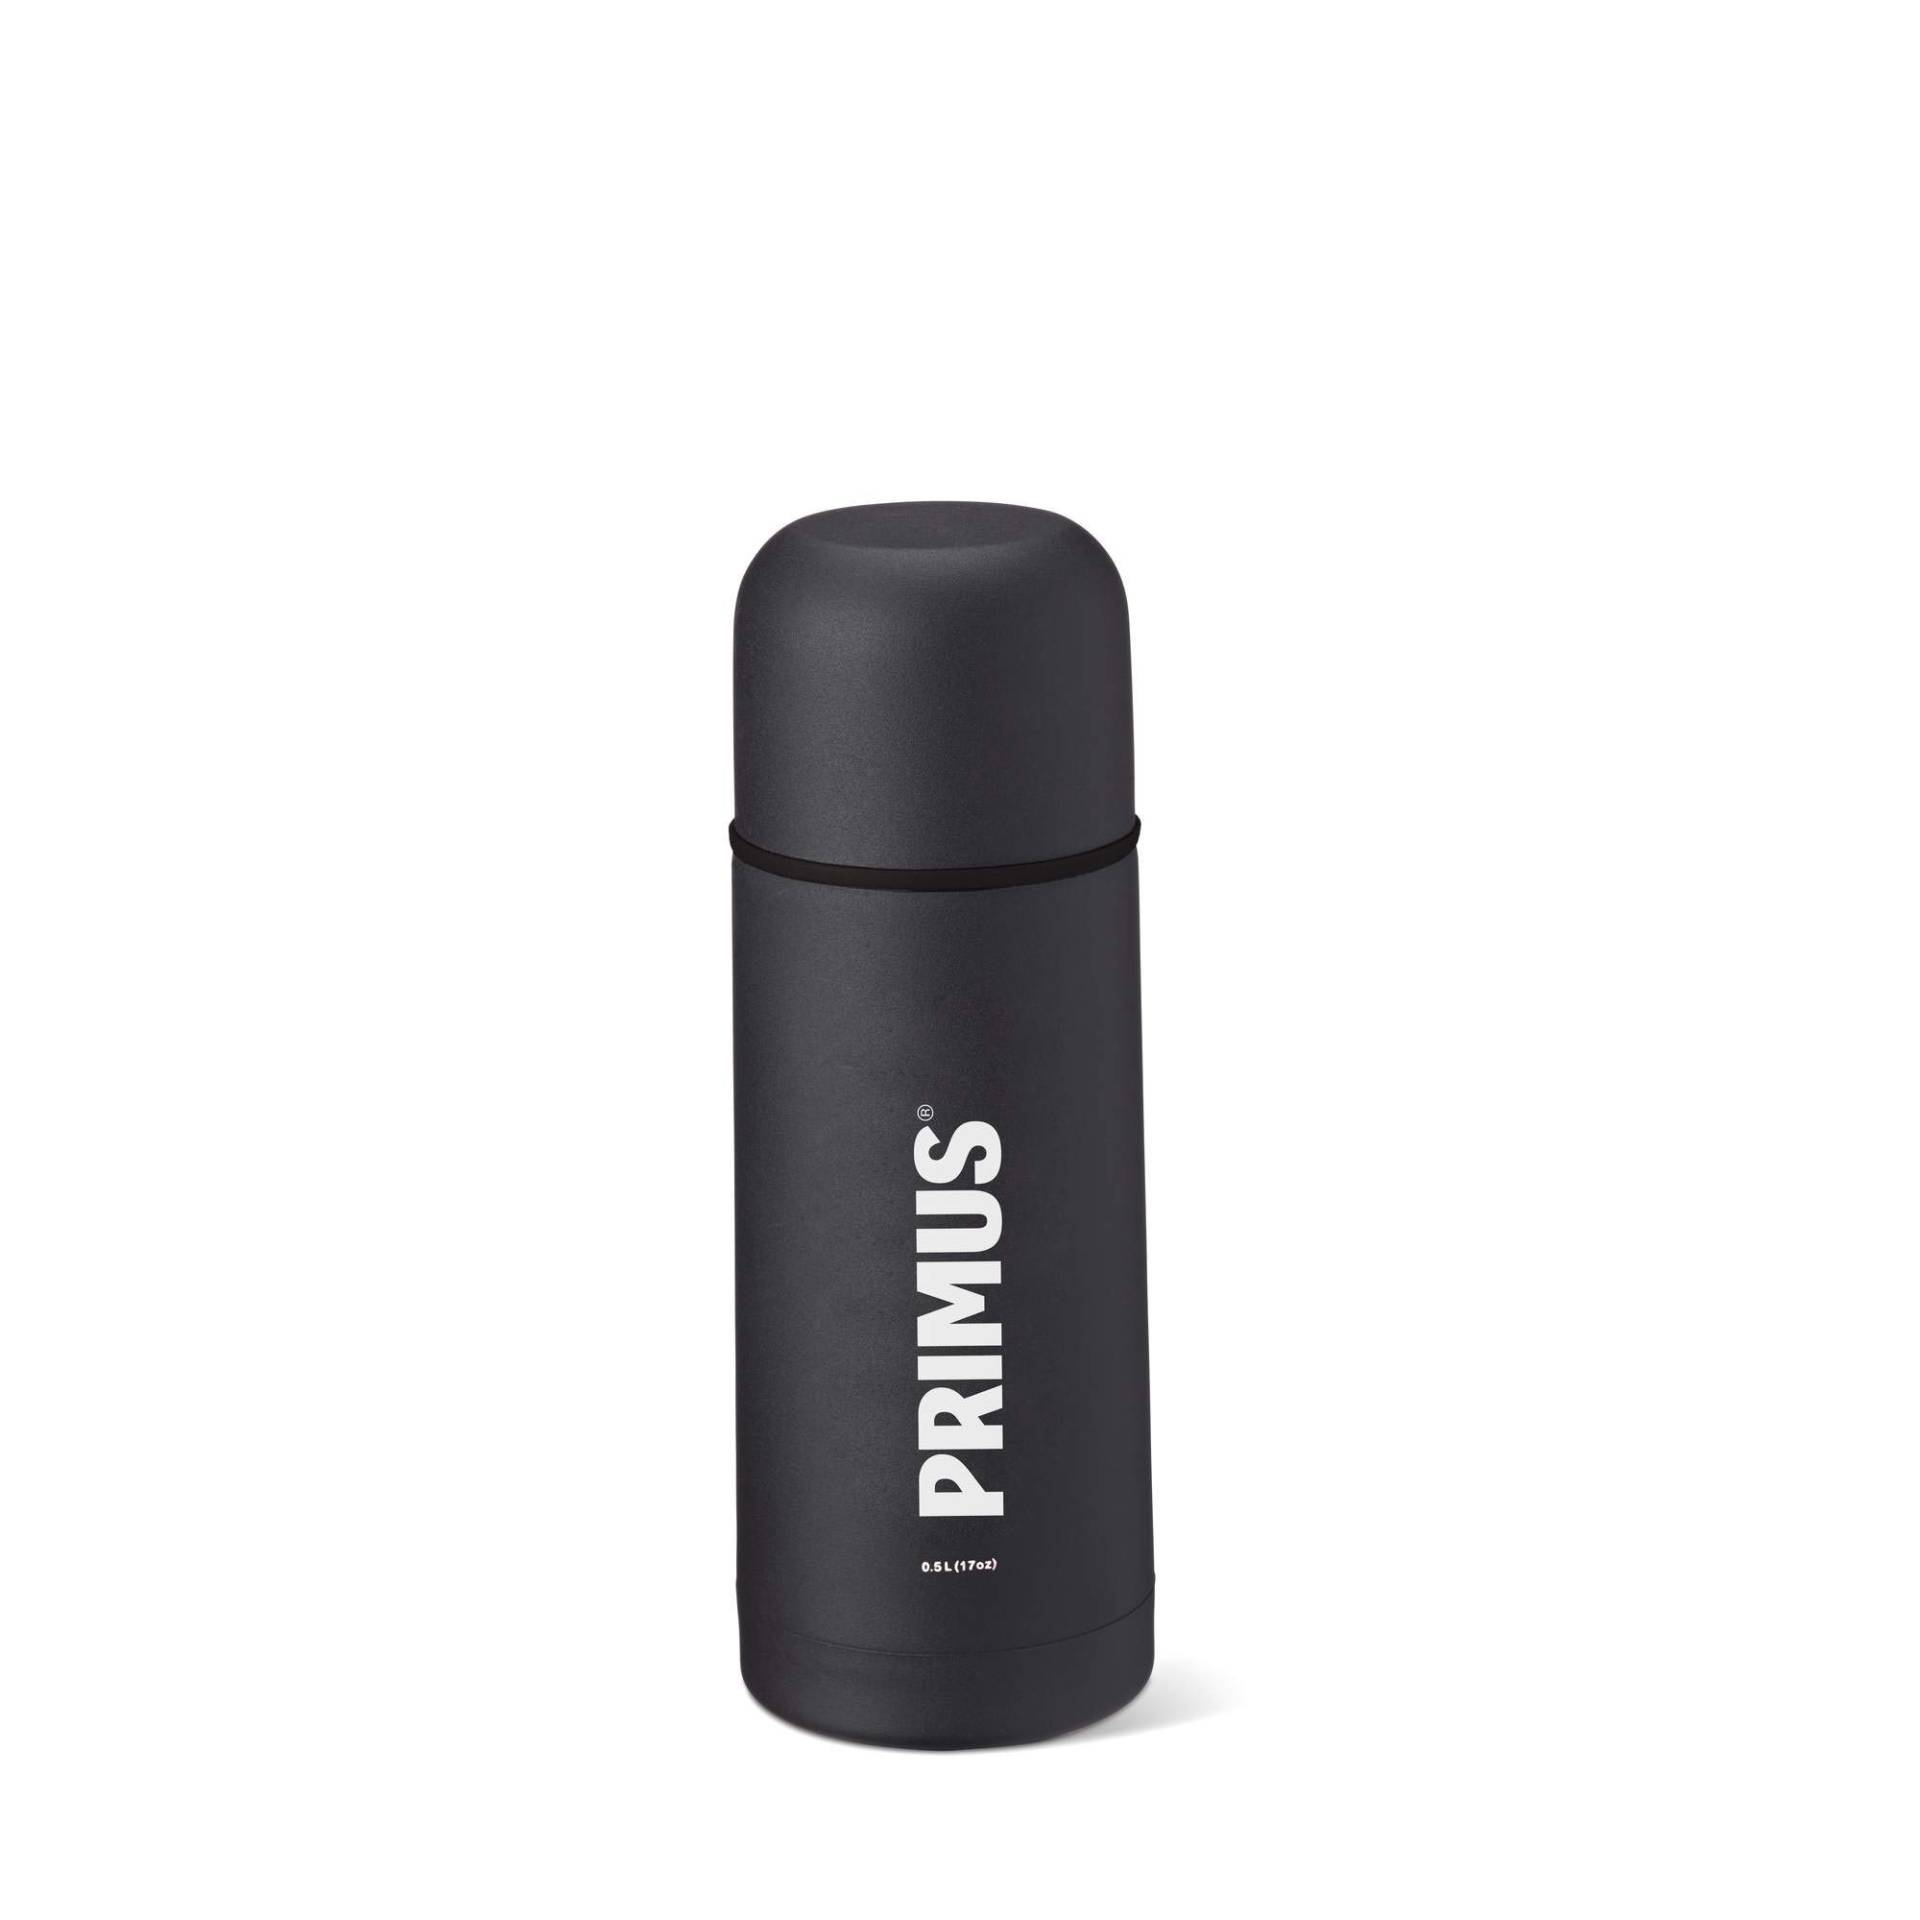 Primus Unisex vacuüm fles Vacuum Bottle, 500ml schwarz, 0,5 EU von PRIMUS